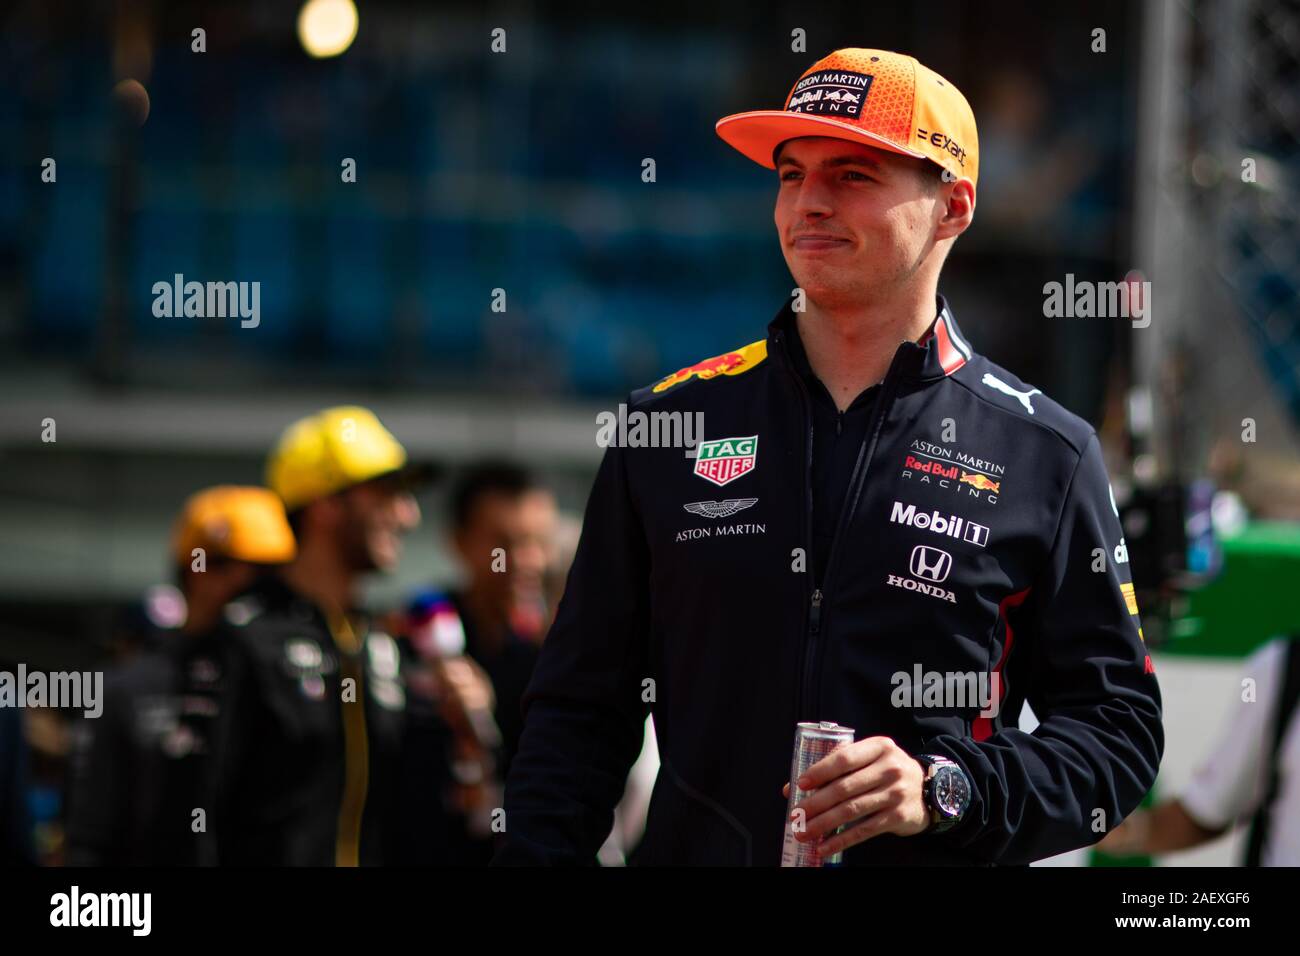 Max Verstappen durante Potraits di Monza Grand Prix 2019, Monza, Italia, 01 dic 2019, motori campionato di Formula 1 Foto Stock